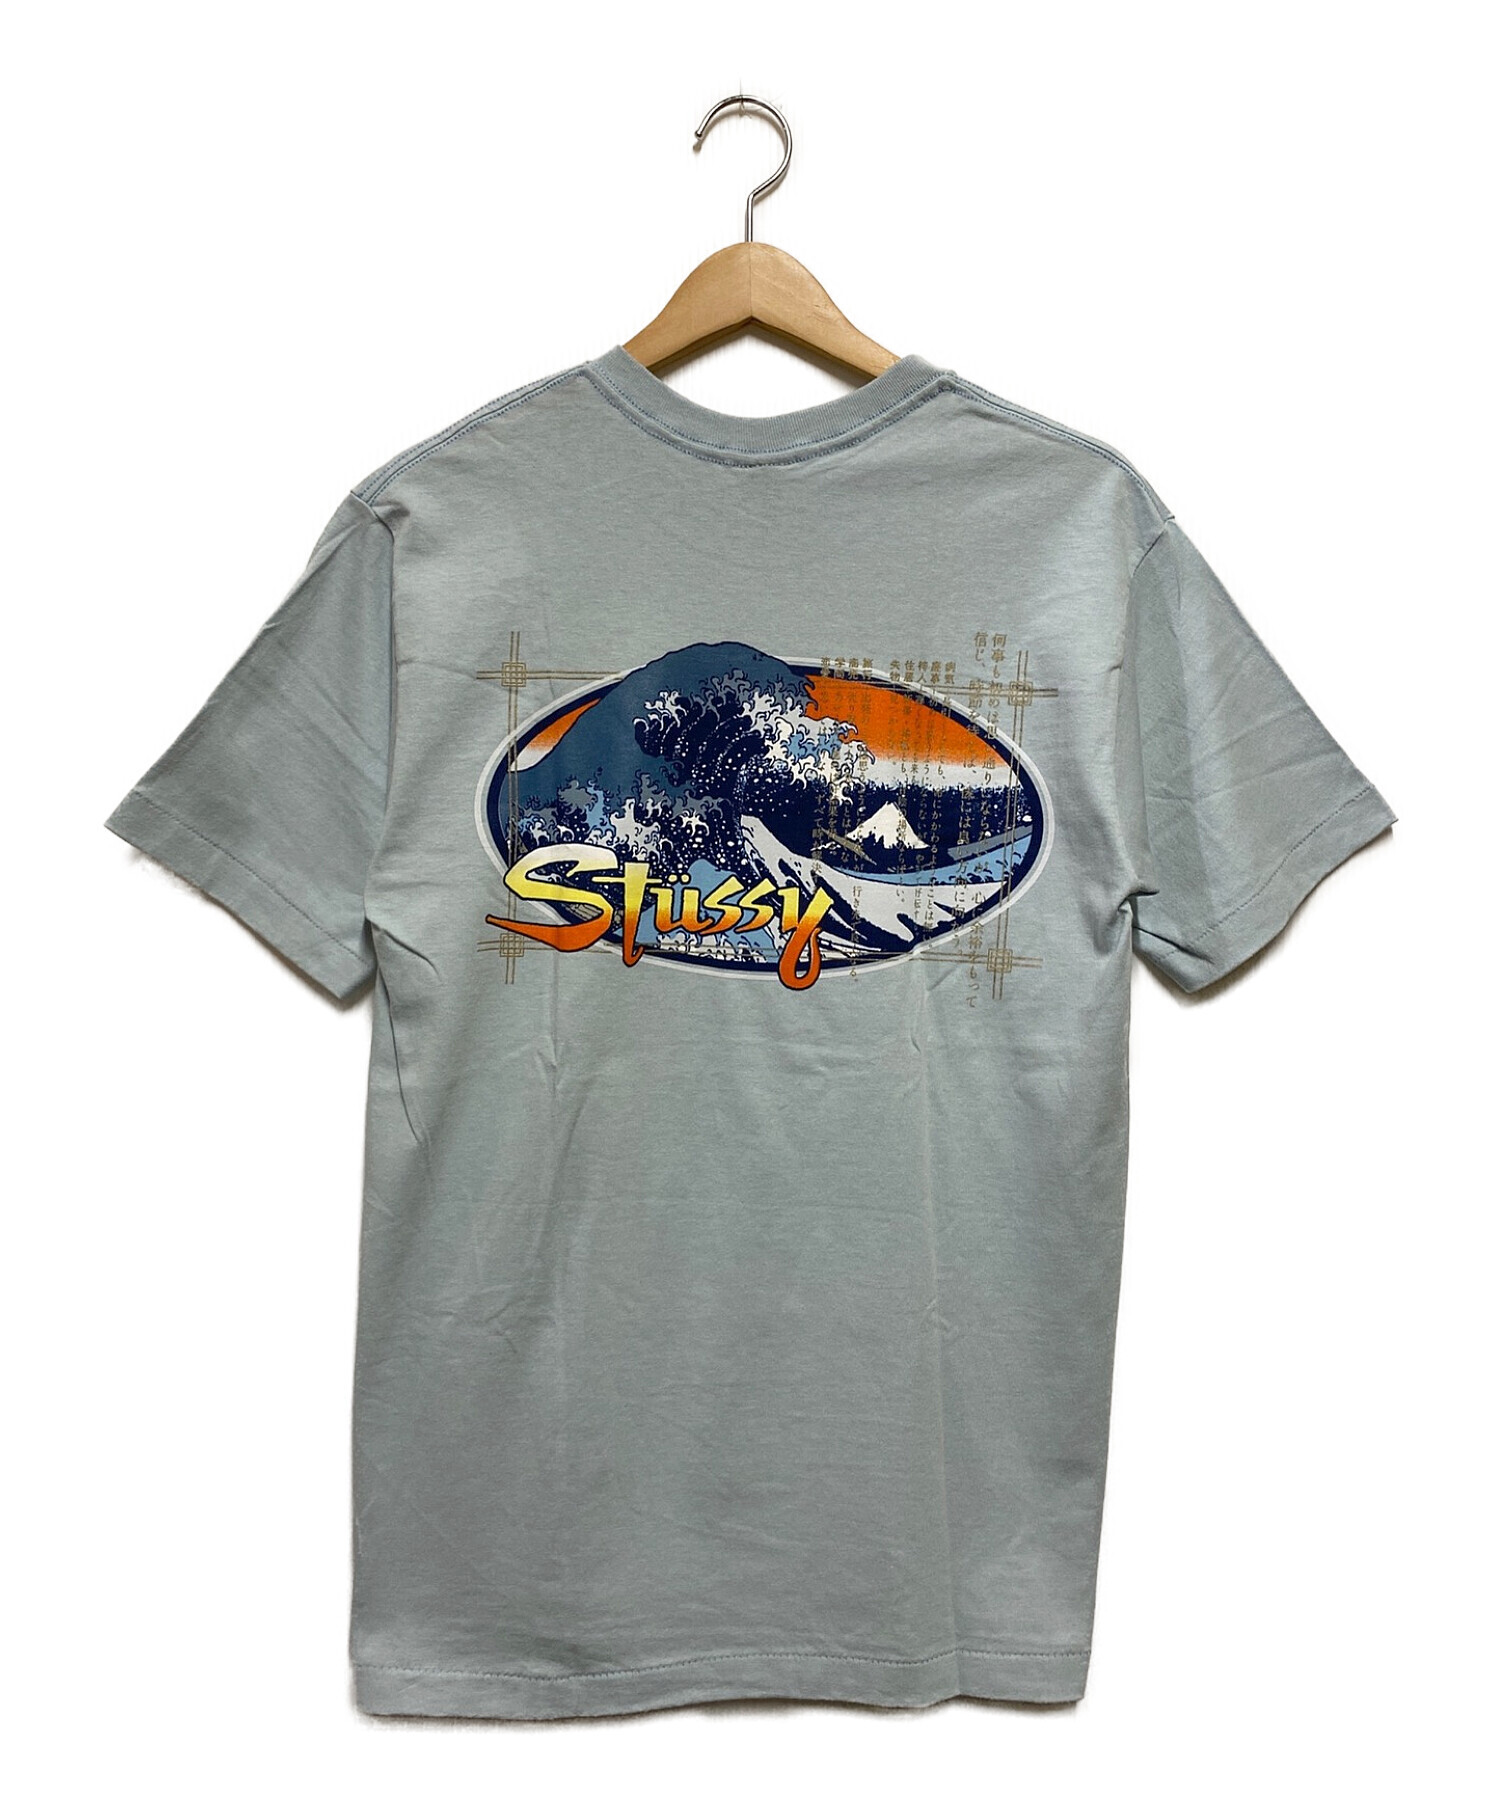 中古・古着通販】stussy (ステューシー) 90's 海山遊人流転石Tシャツ 